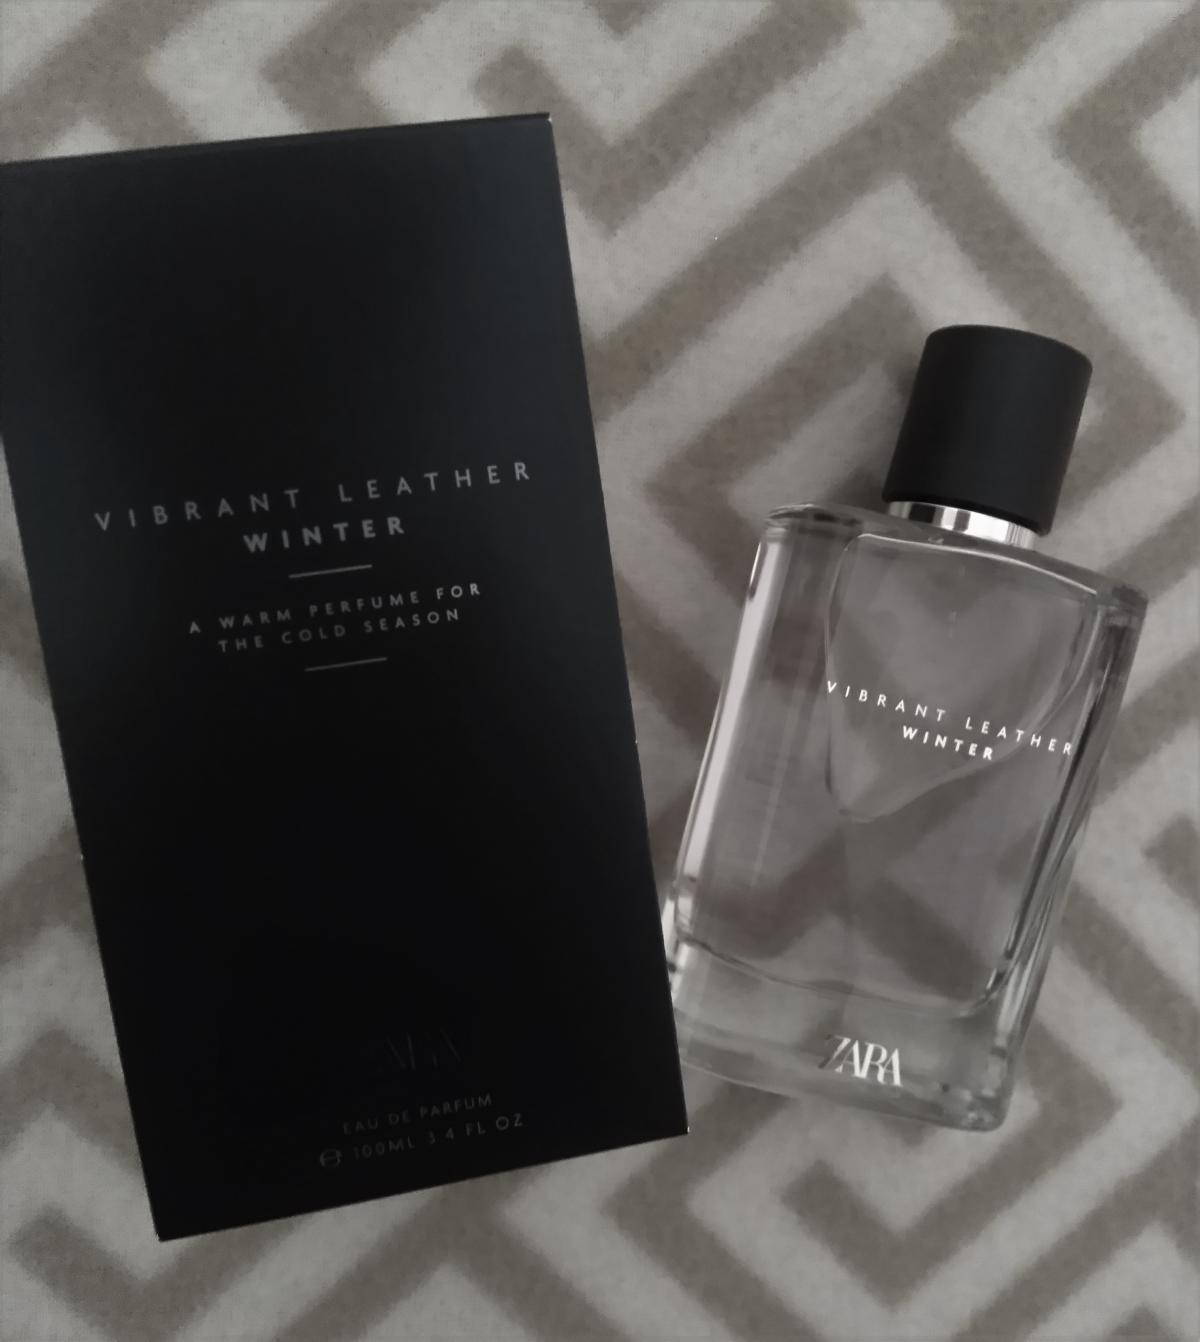 Vibrant Leather Winter Zara Cologne un nouveau parfum pour homme 2020